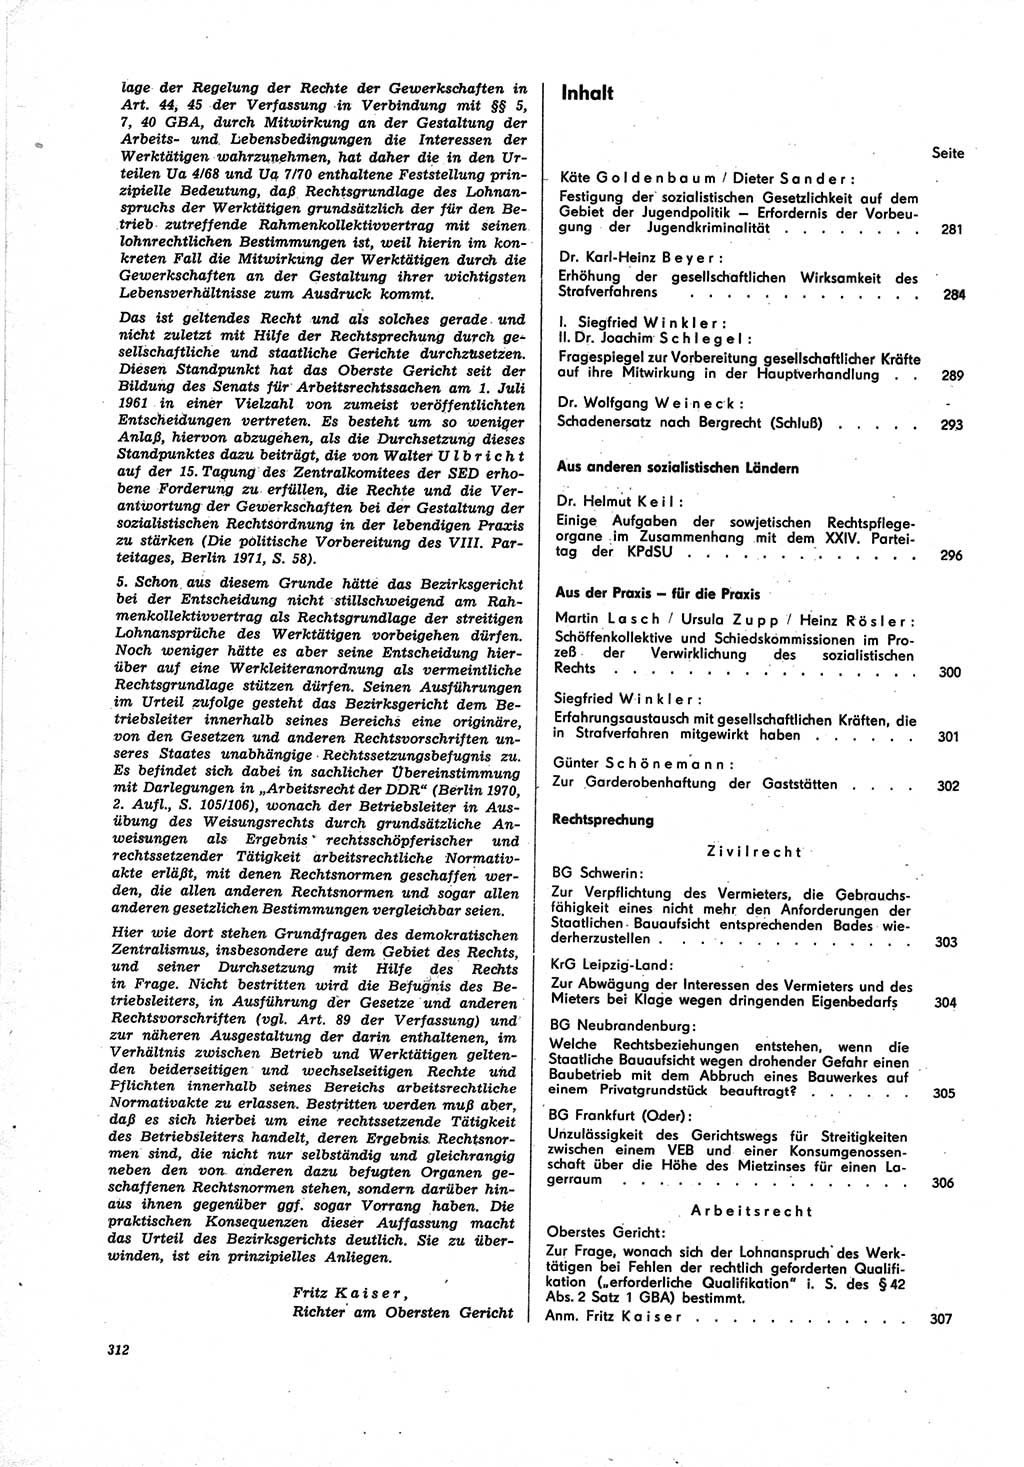 Neue Justiz (NJ), Zeitschrift für Recht und Rechtswissenschaft [Deutsche Demokratische Republik (DDR)], 25. Jahrgang 1971, Seite 312 (NJ DDR 1971, S. 312)